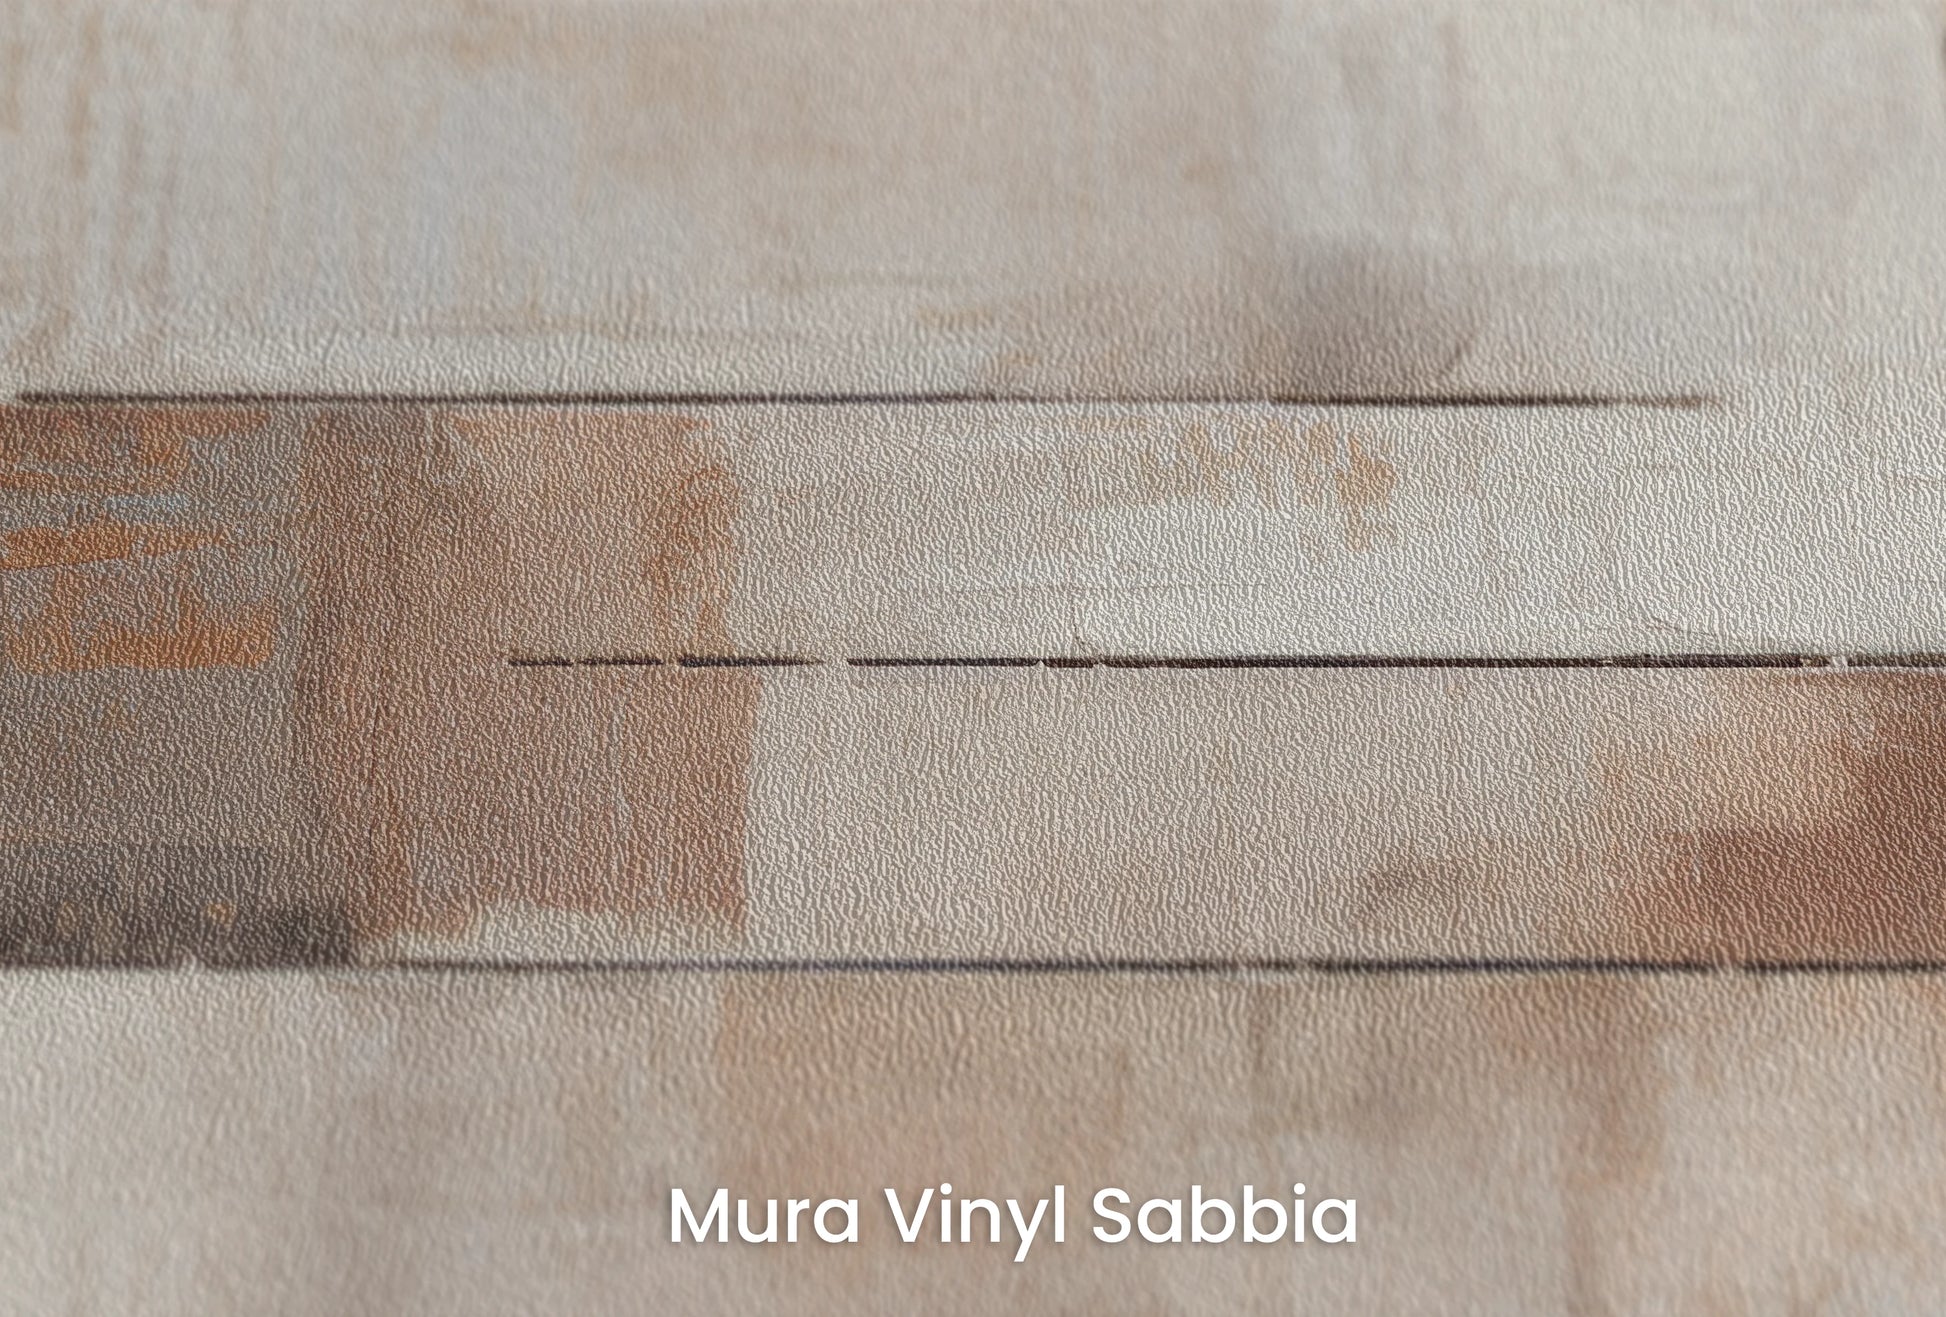 Zbliżenie na artystyczną fototapetę o nazwie Rustic Modernity na podłożu Mura Vinyl Sabbia struktura grubego ziarna piasku.